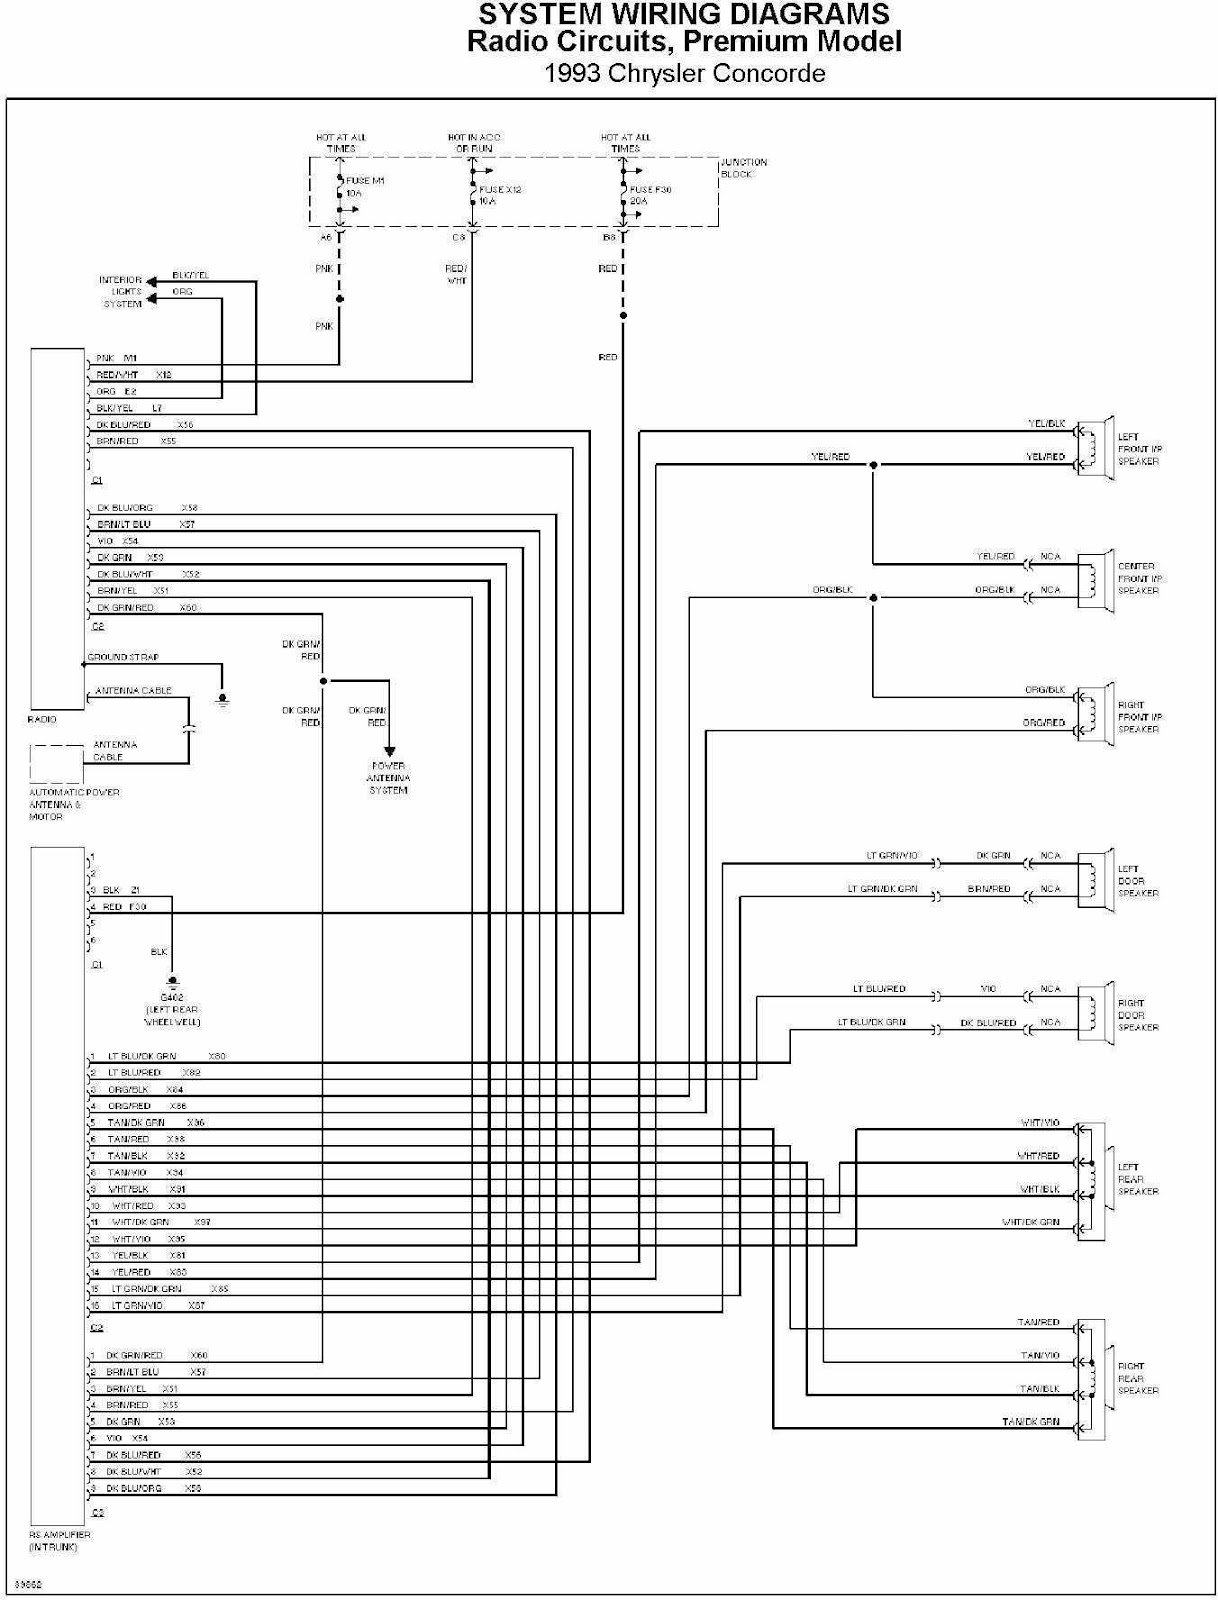 Chrysler car radio wiring diagram